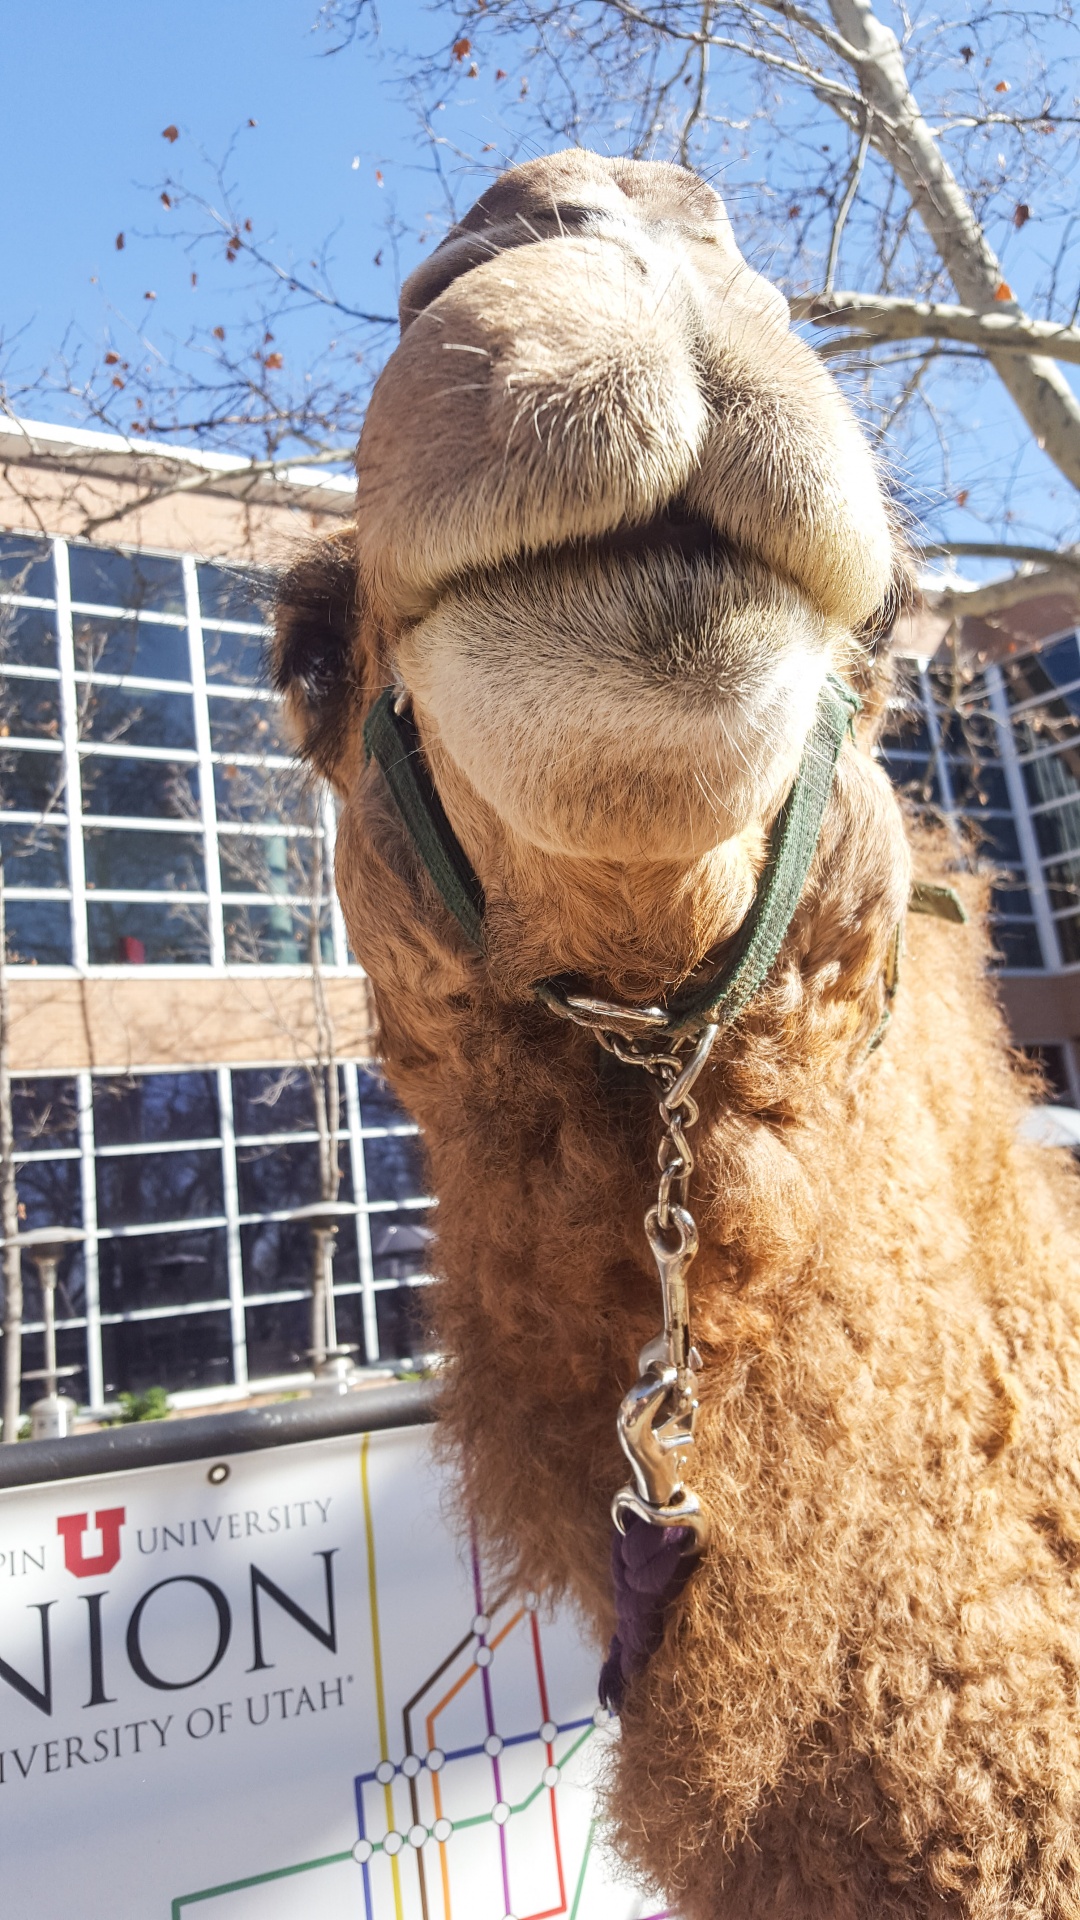 camel university utah utah free photo